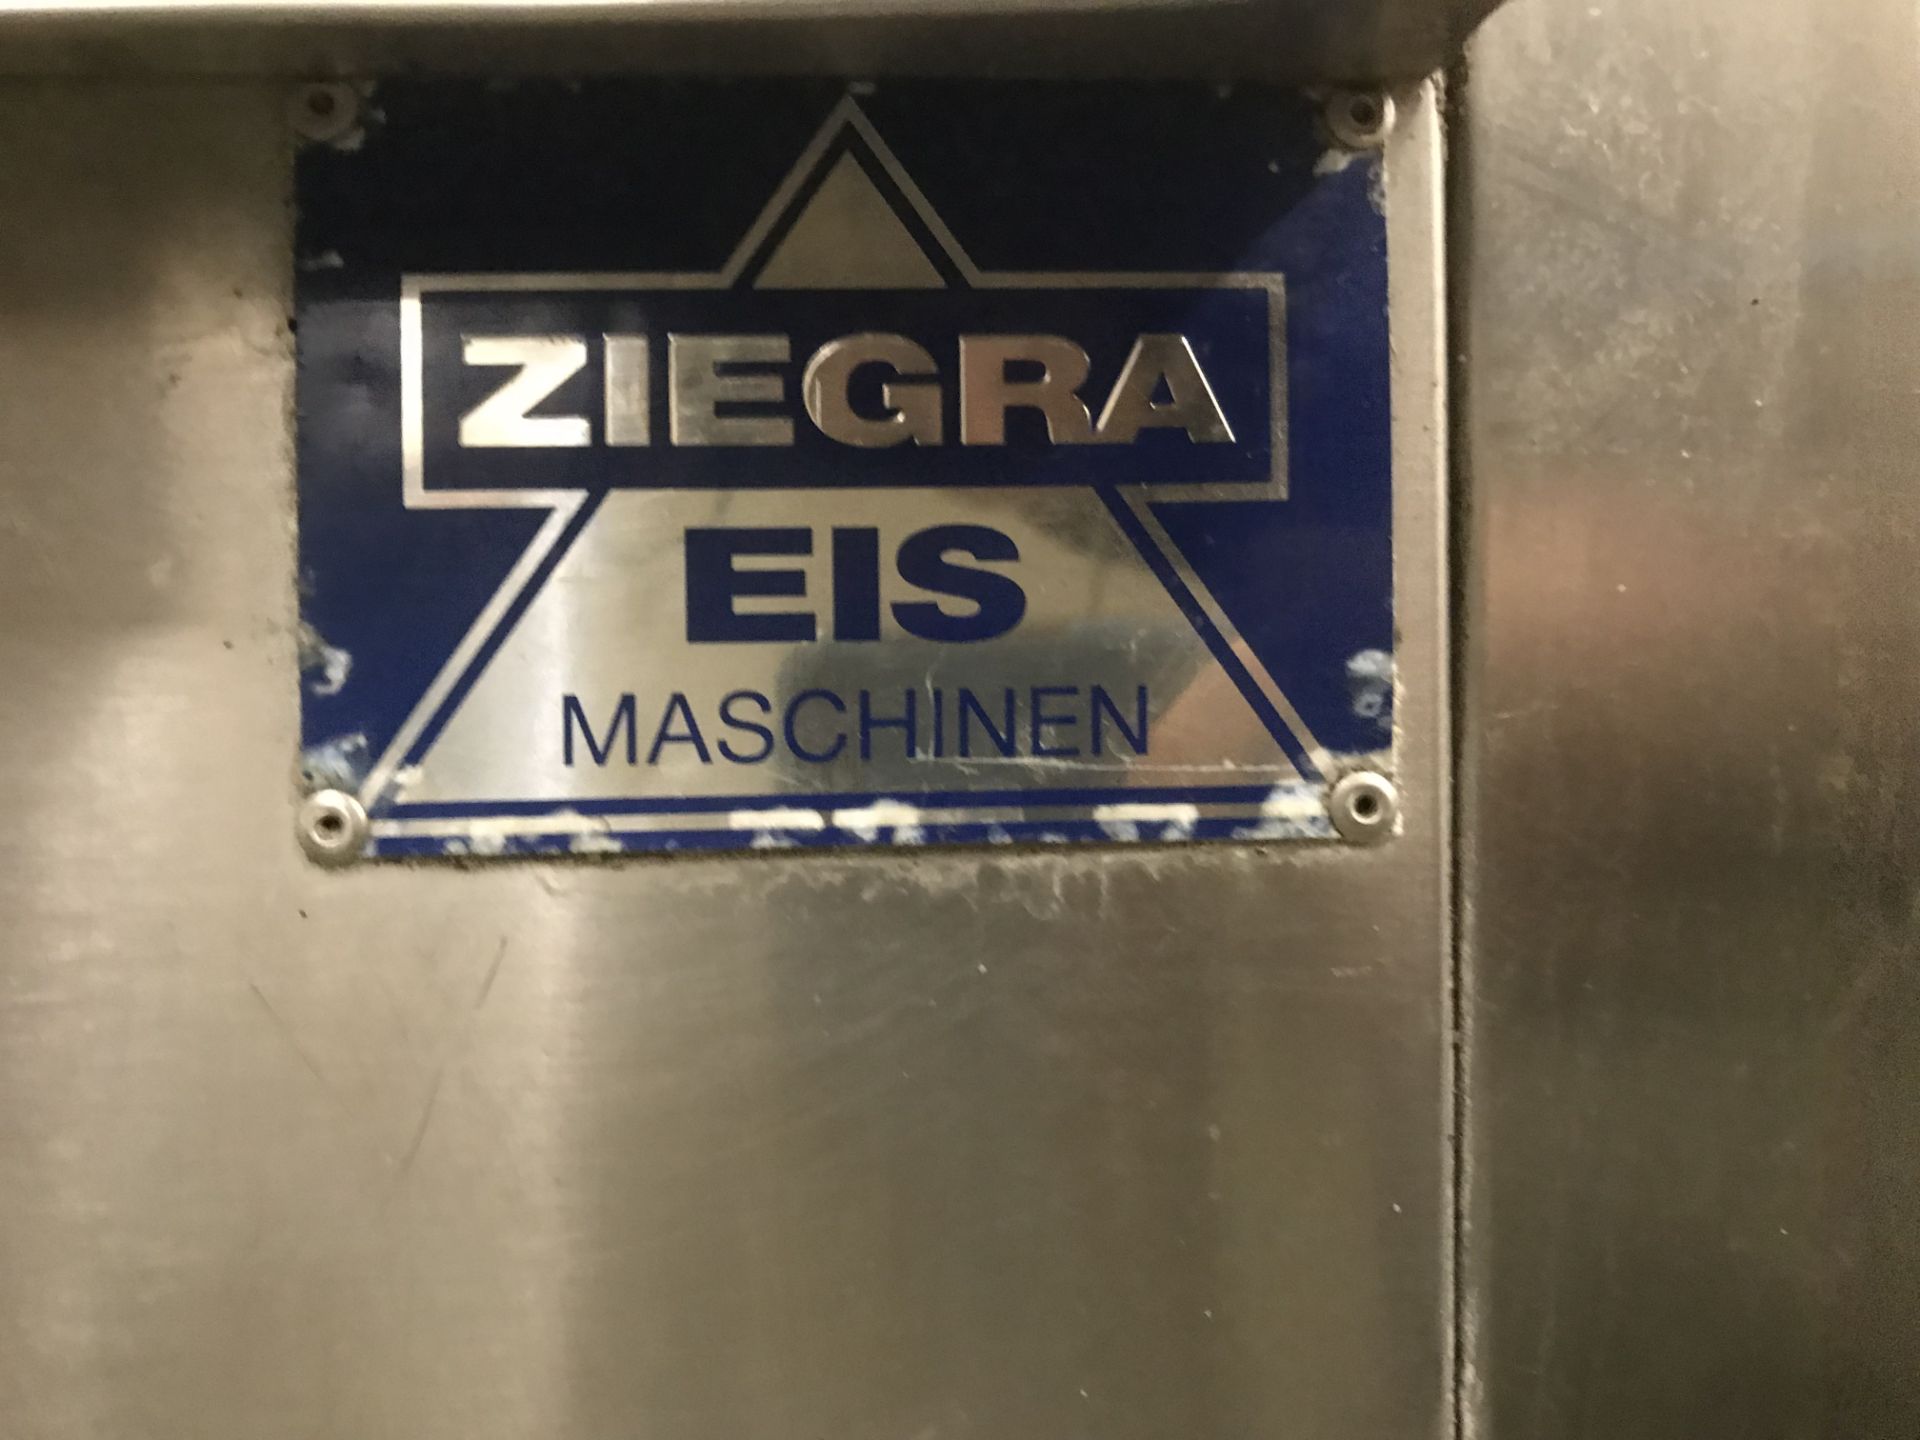 Ziegra Stainless Steel Ice Machine | Missing Top Panel - Bild 2 aus 2